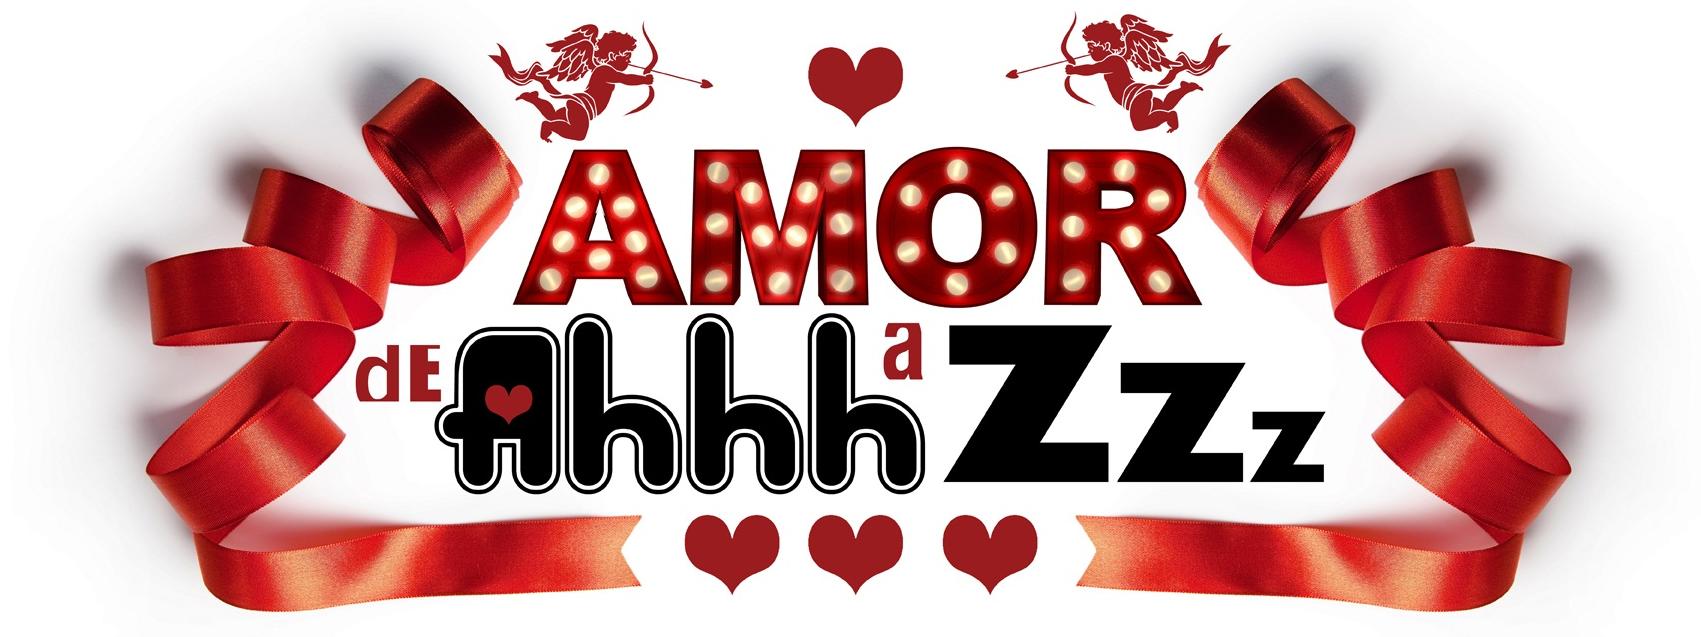 Se7ebeLos- Amor de Ahhh a Zzz